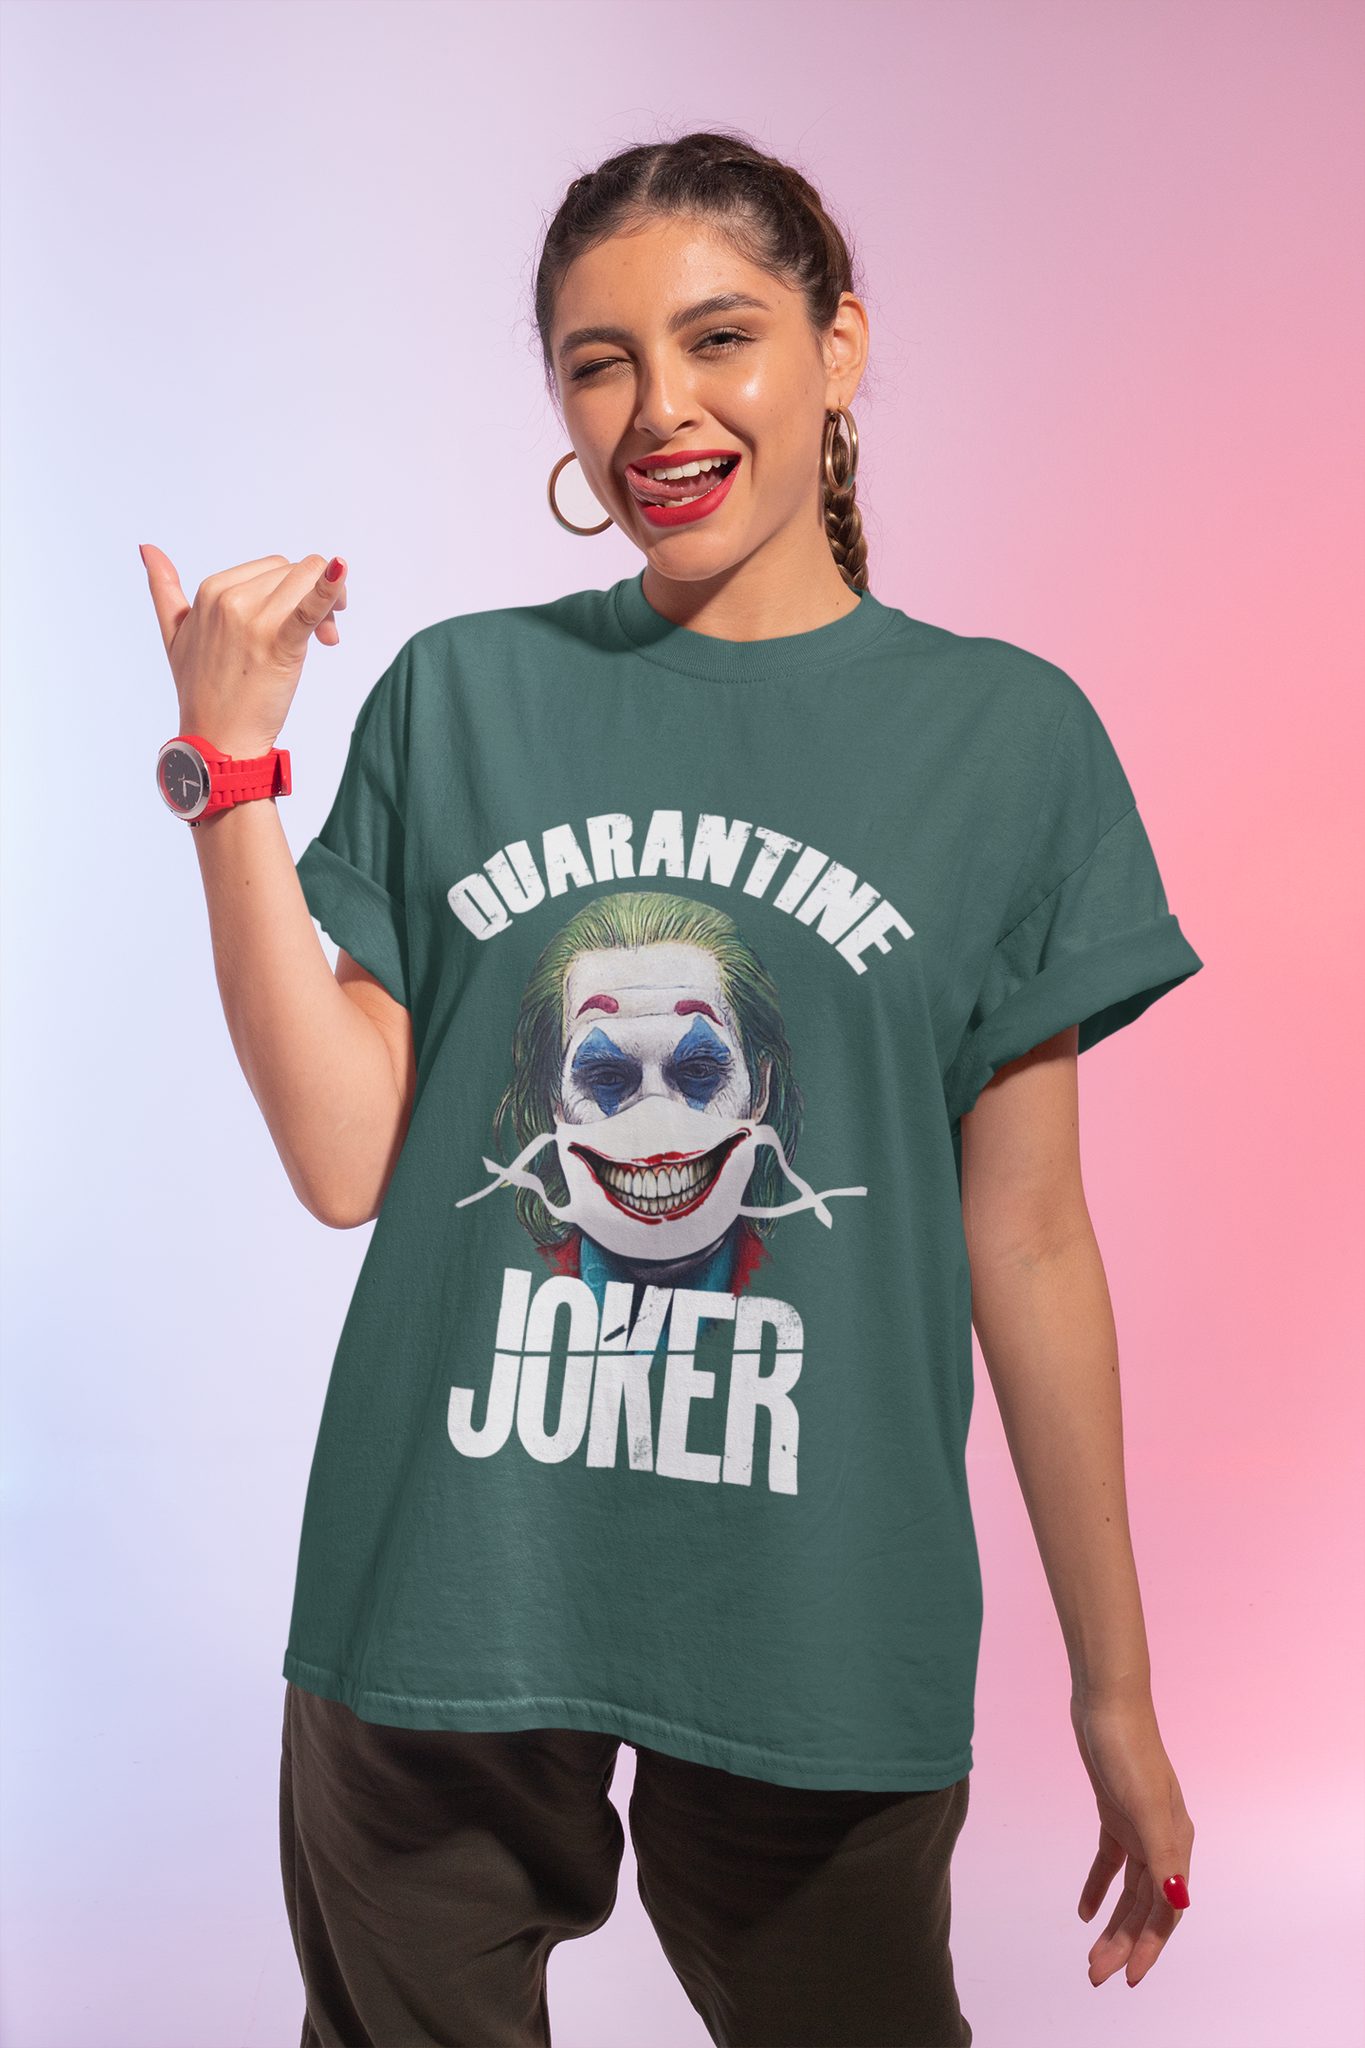 Joker T Shirt, Joker The Comedian Tshirt, Quarantine Joker Shirt, Halloween Gifts